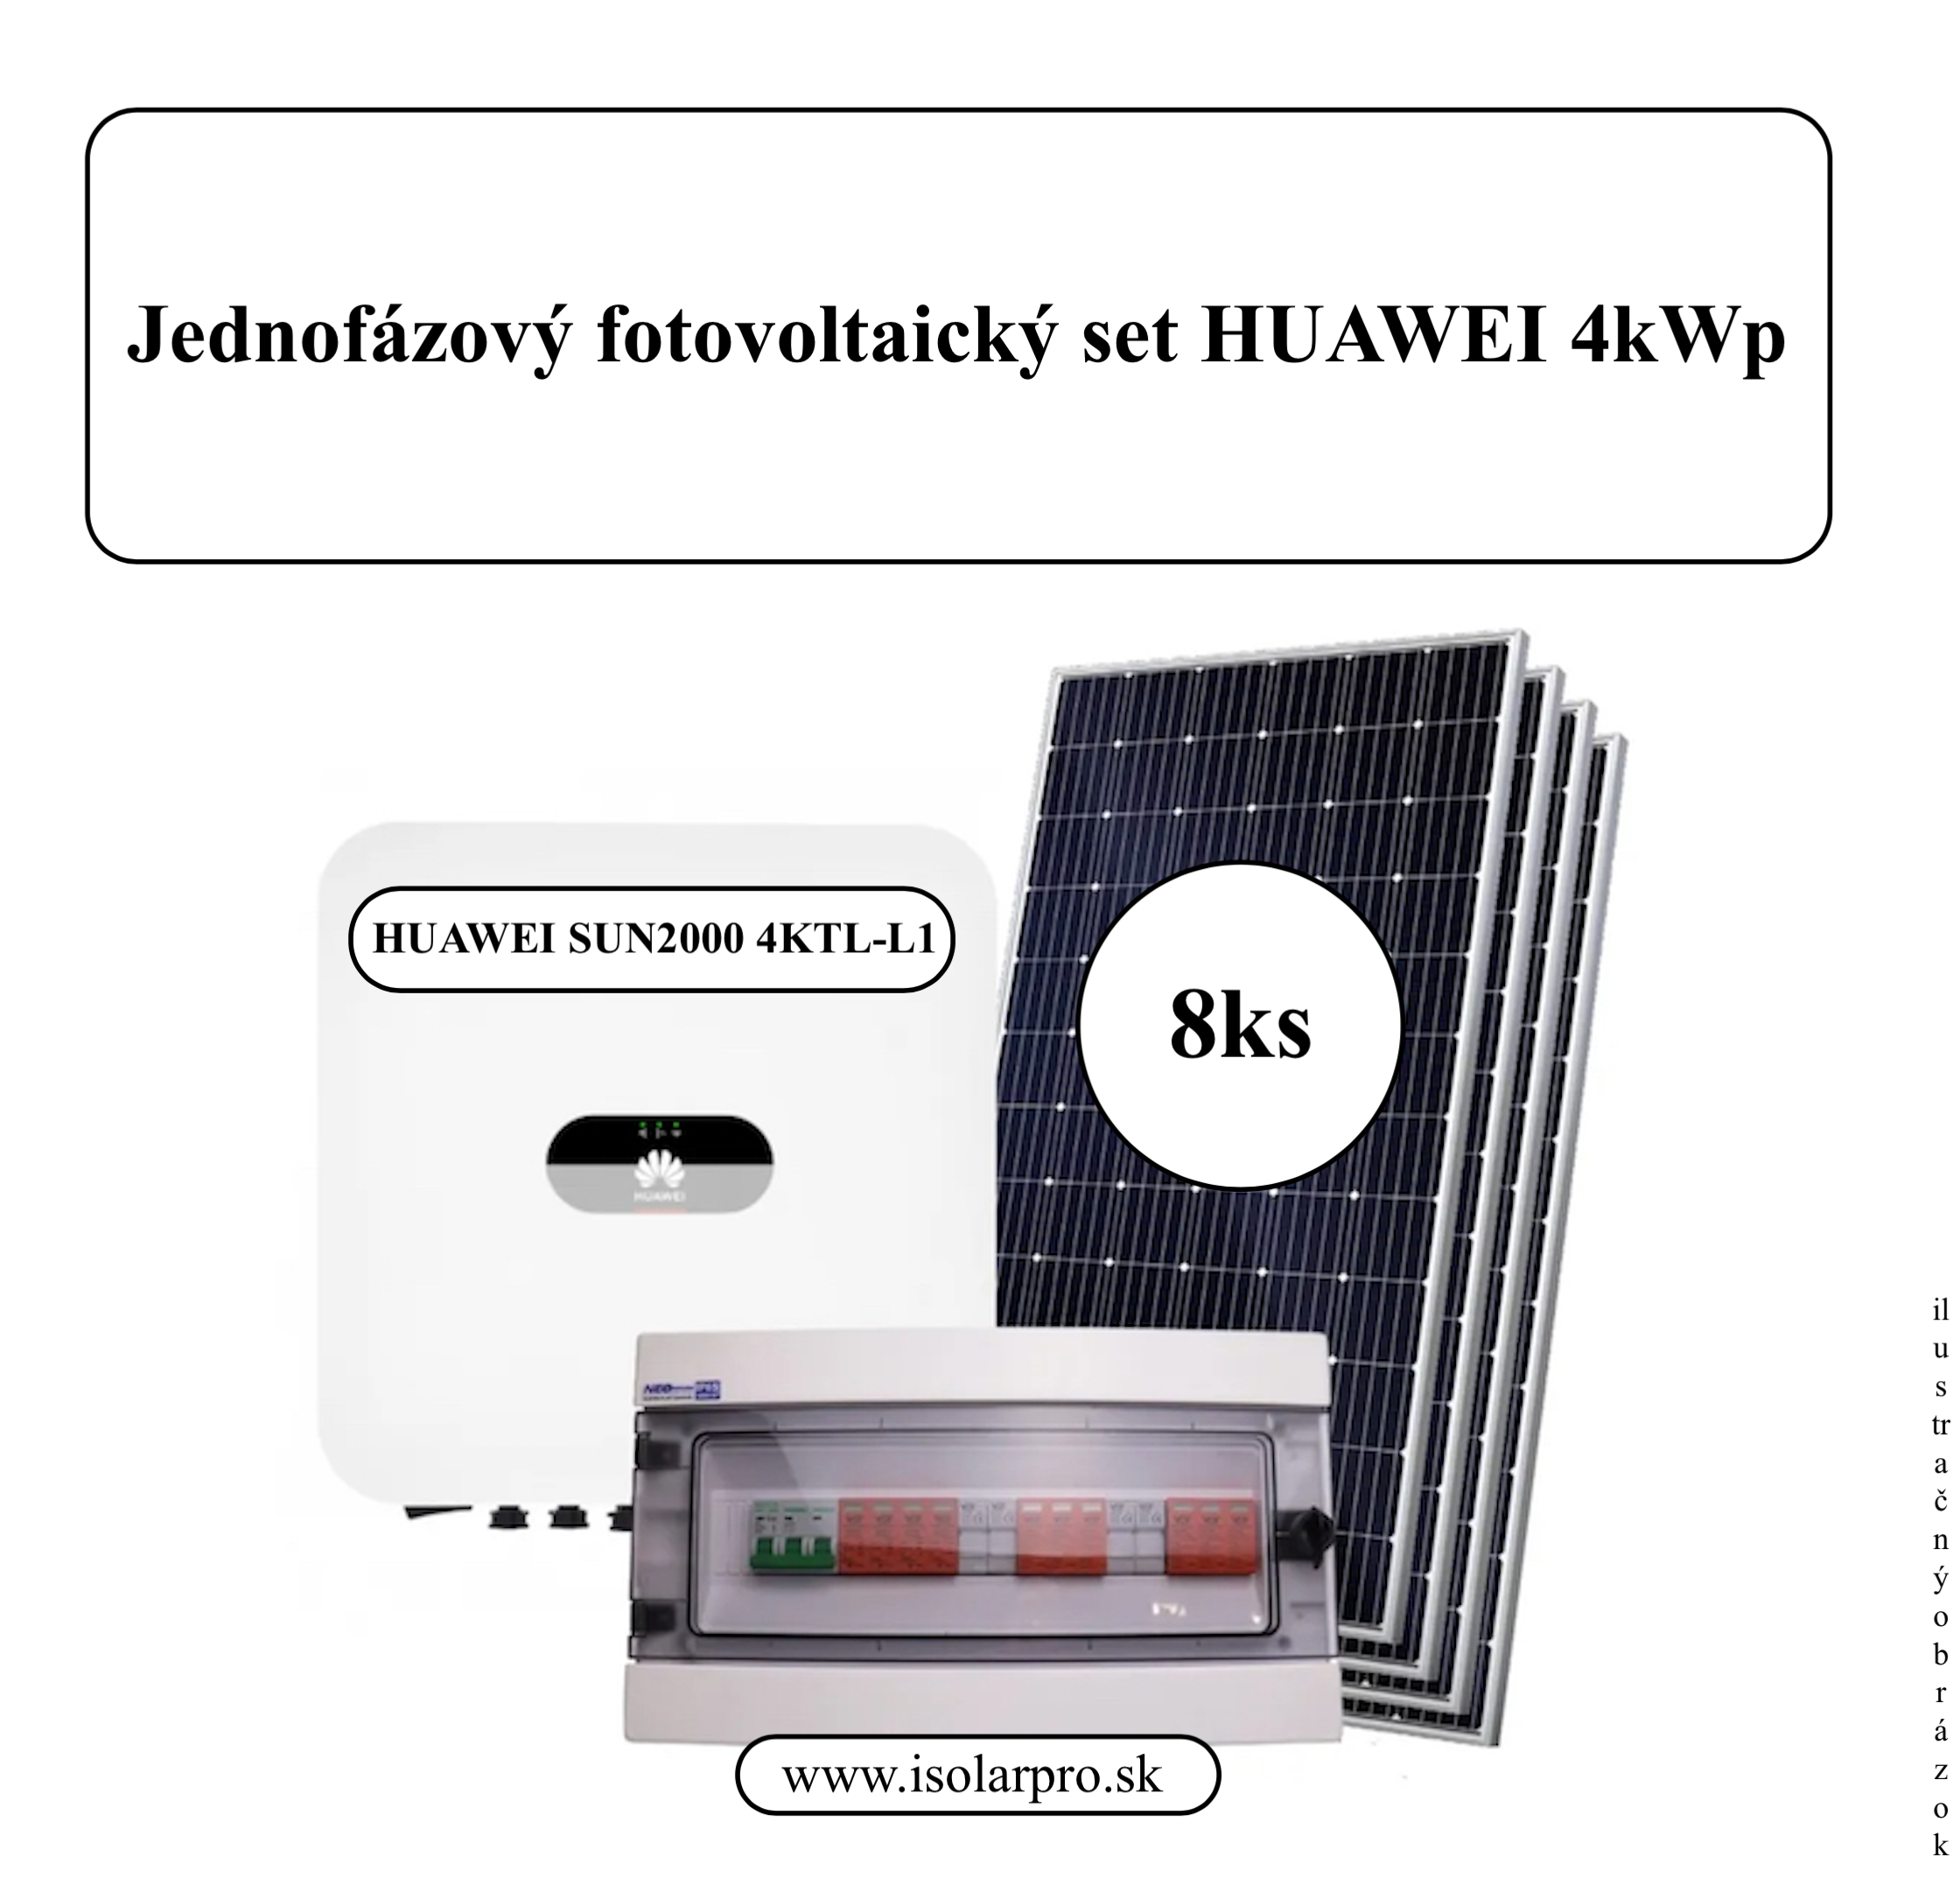 4kWp Jednofázový fotovoltický set, On-grid Huawei